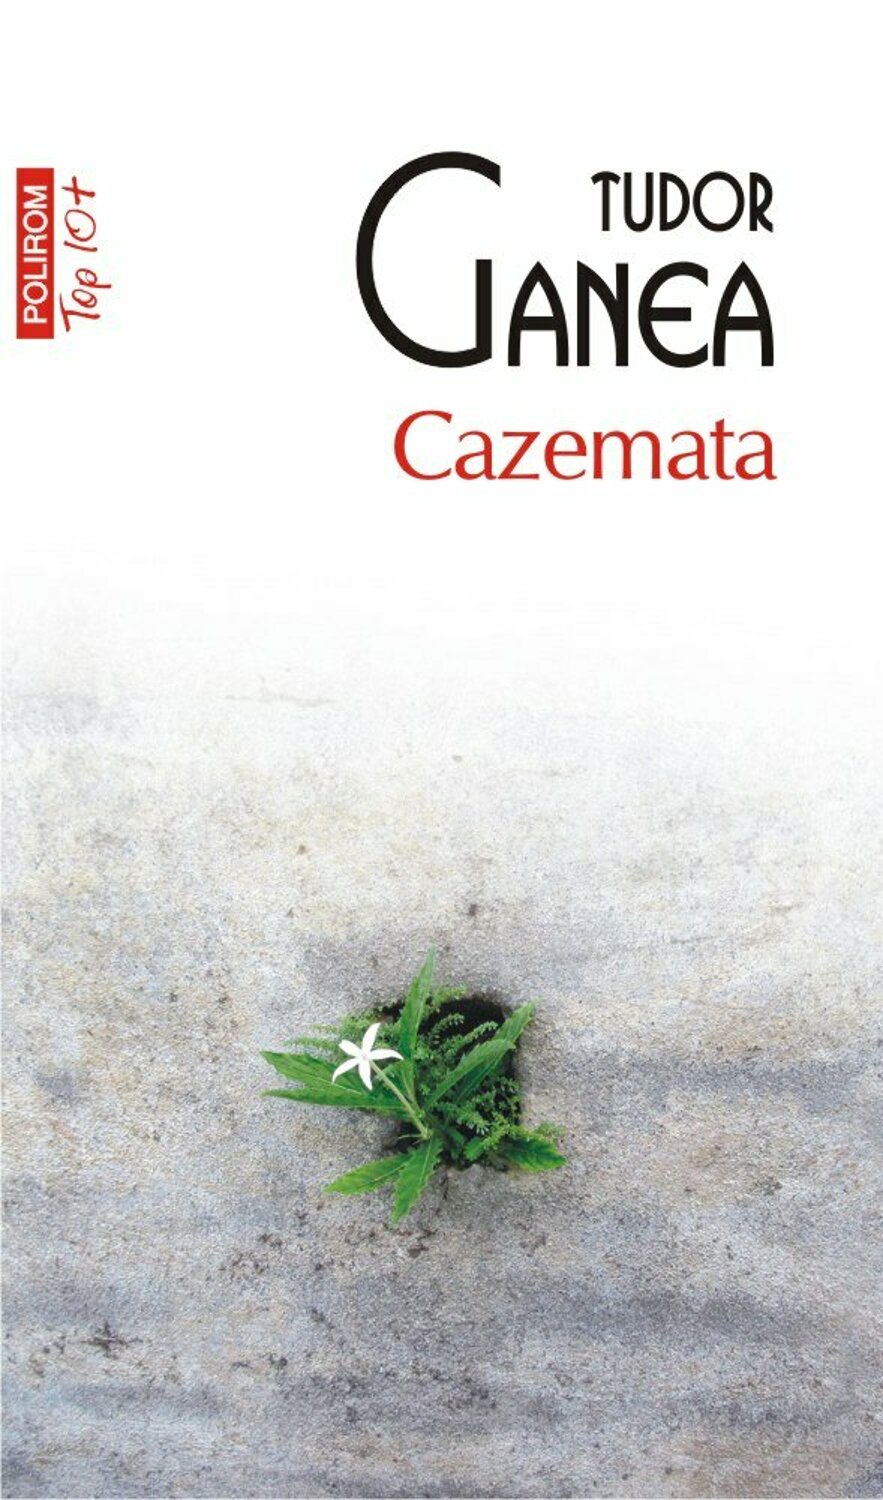 Cazemata